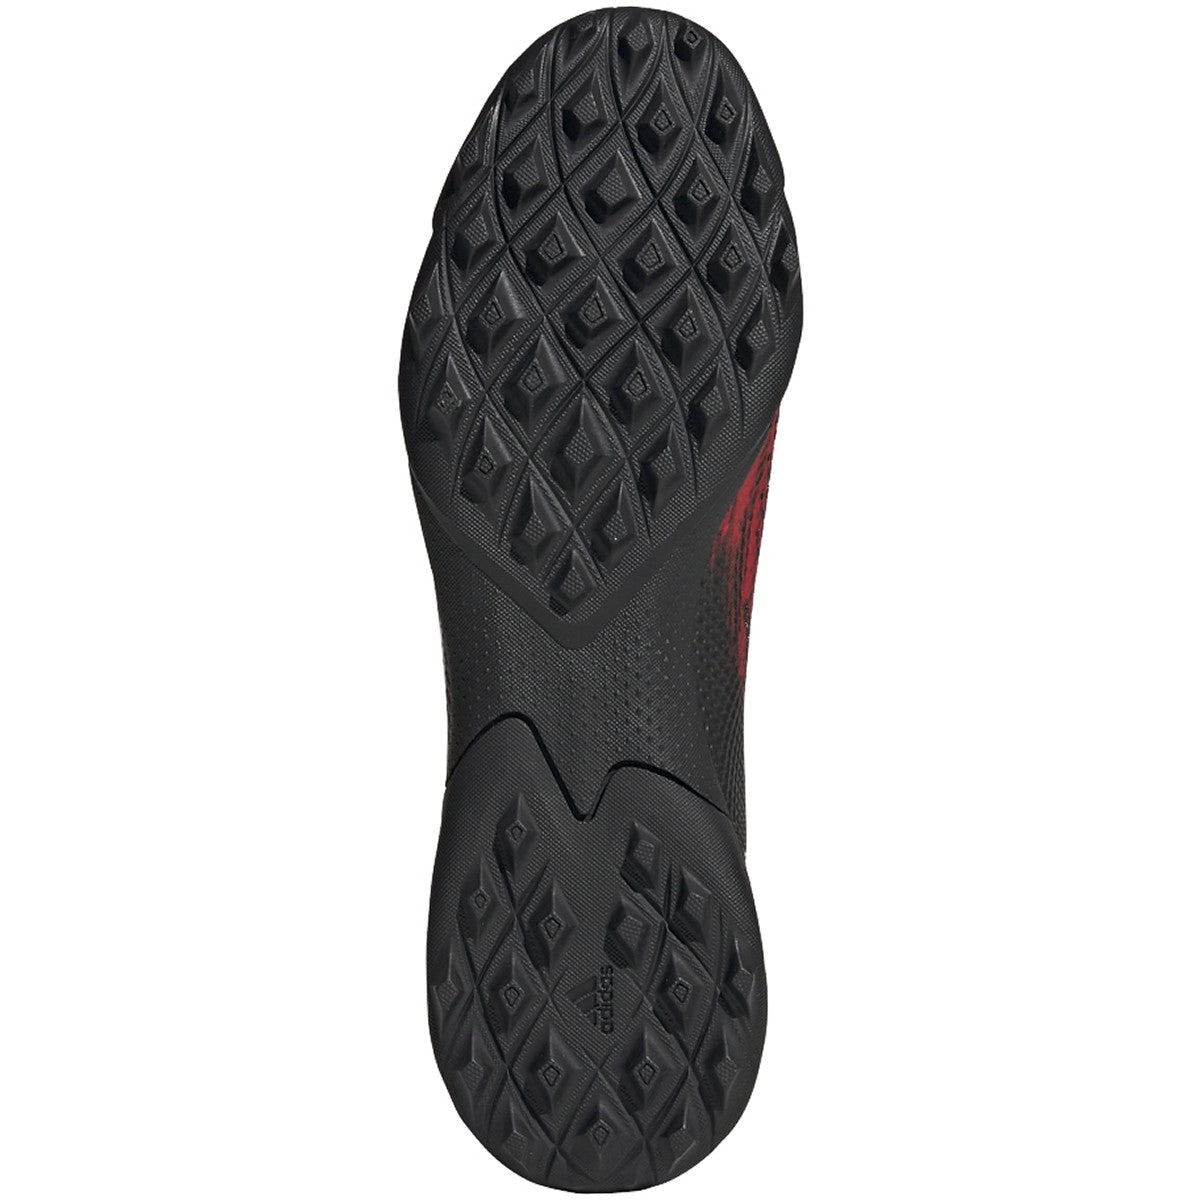 Adidas Predator 20.3 TF Turf Soccer Shoes